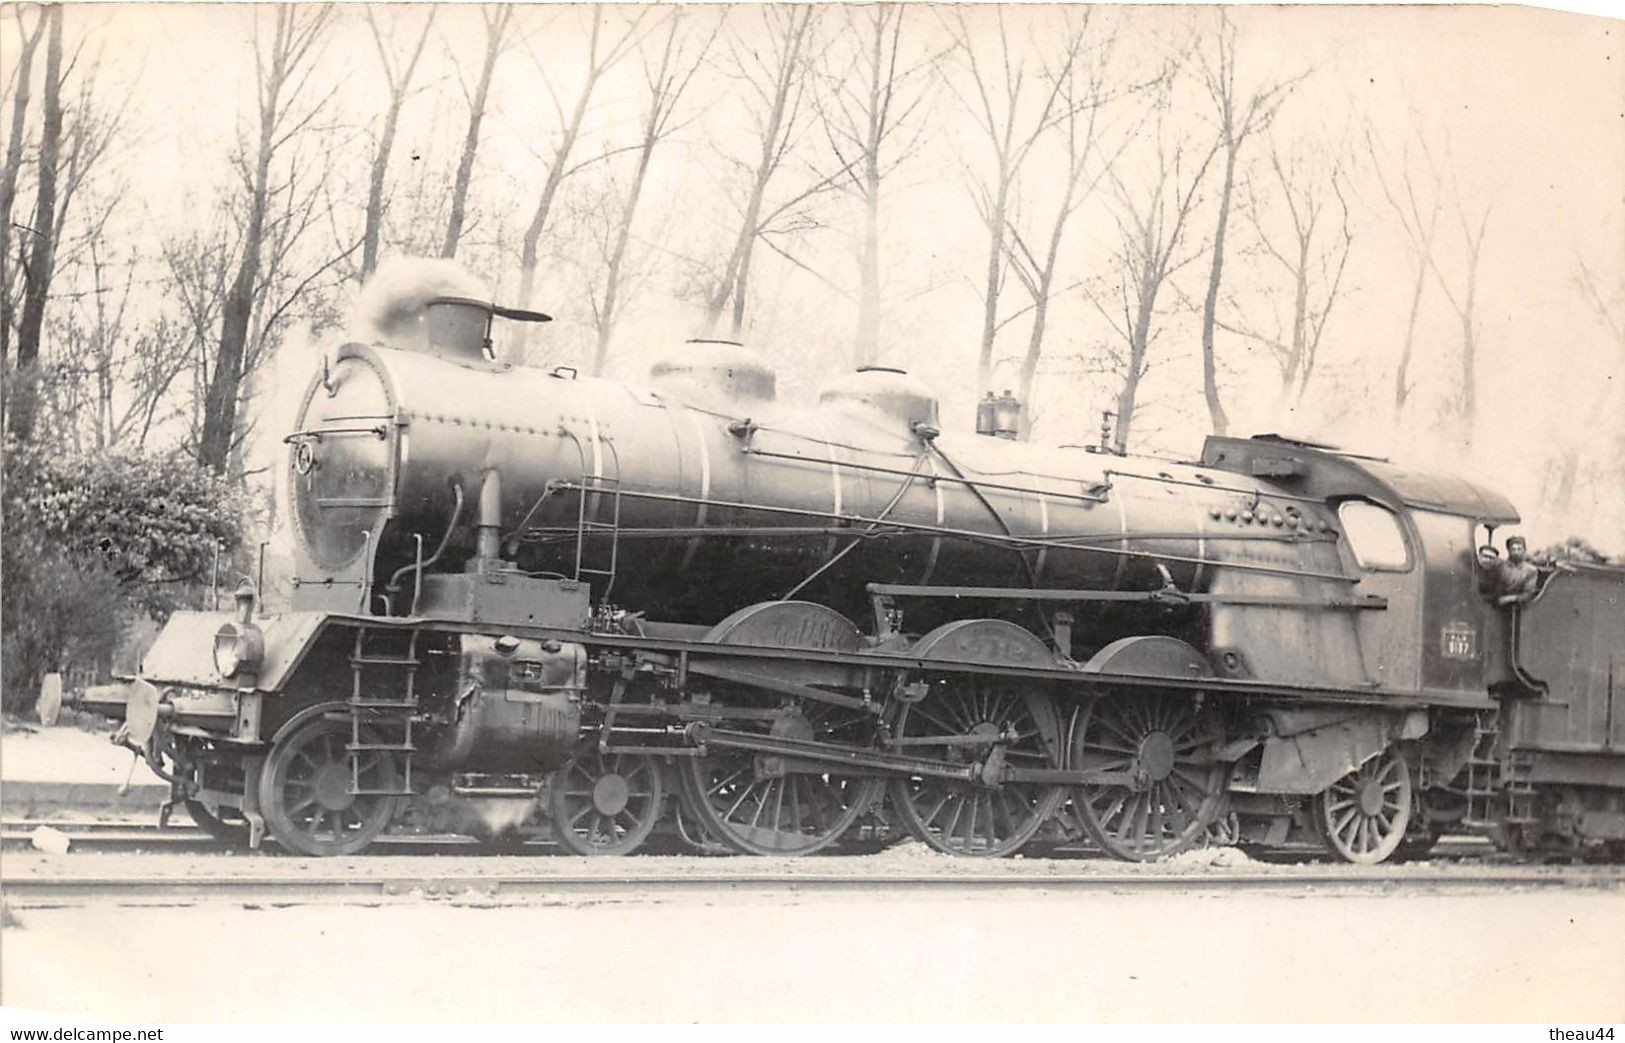 ¤¤   -  Carte-Photo D'une Locomotive Ancienne   -  Chemin De Fer Du P.L.M.  -  Cheminots      -  ¤¤ - Equipment